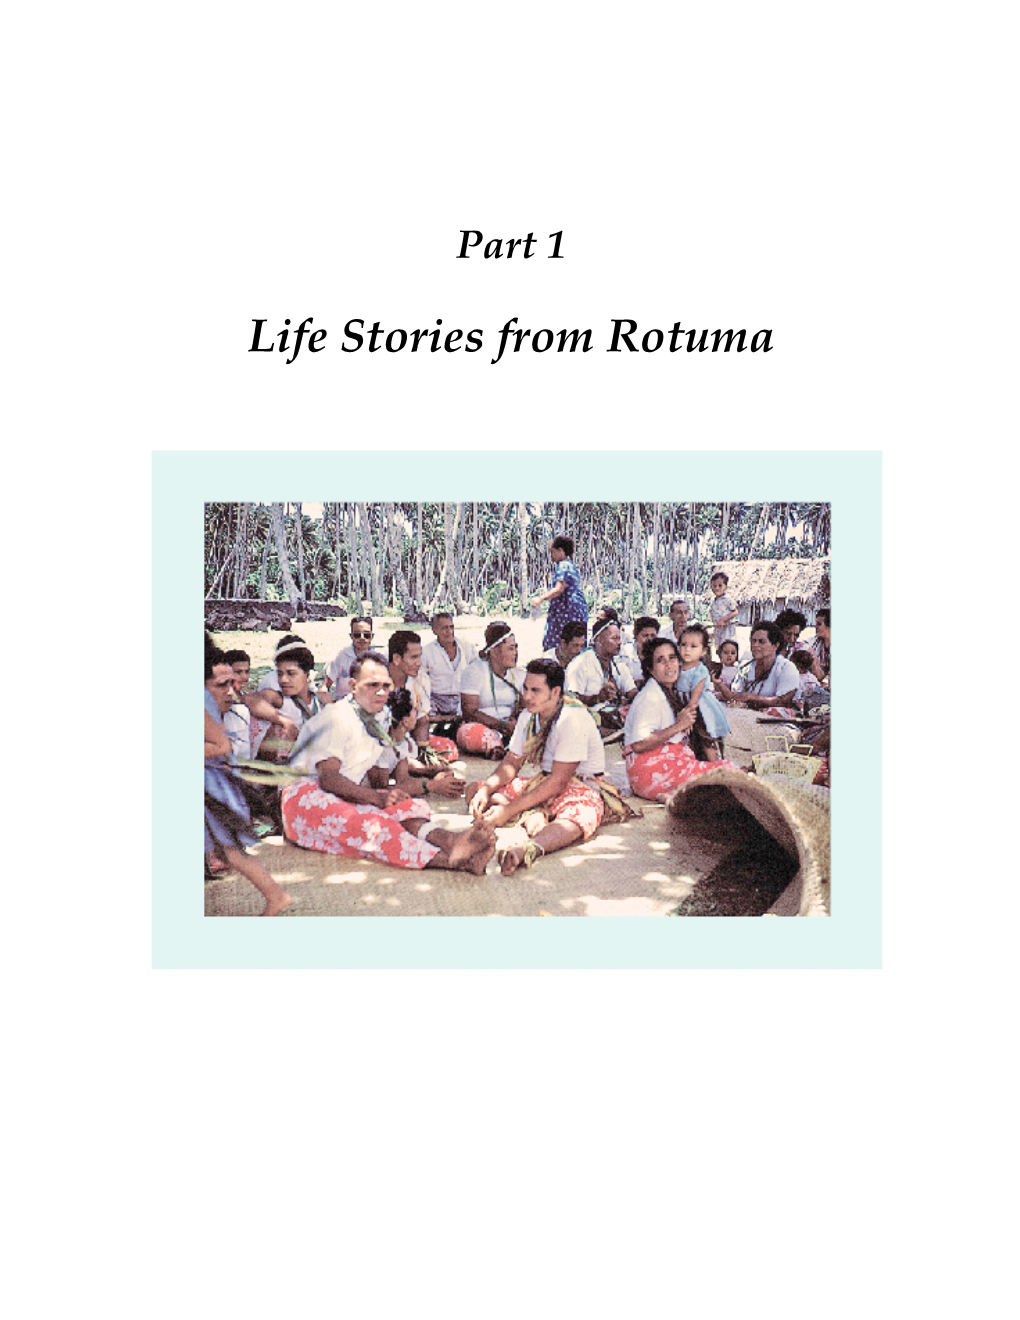 Life Stories from Rotuma